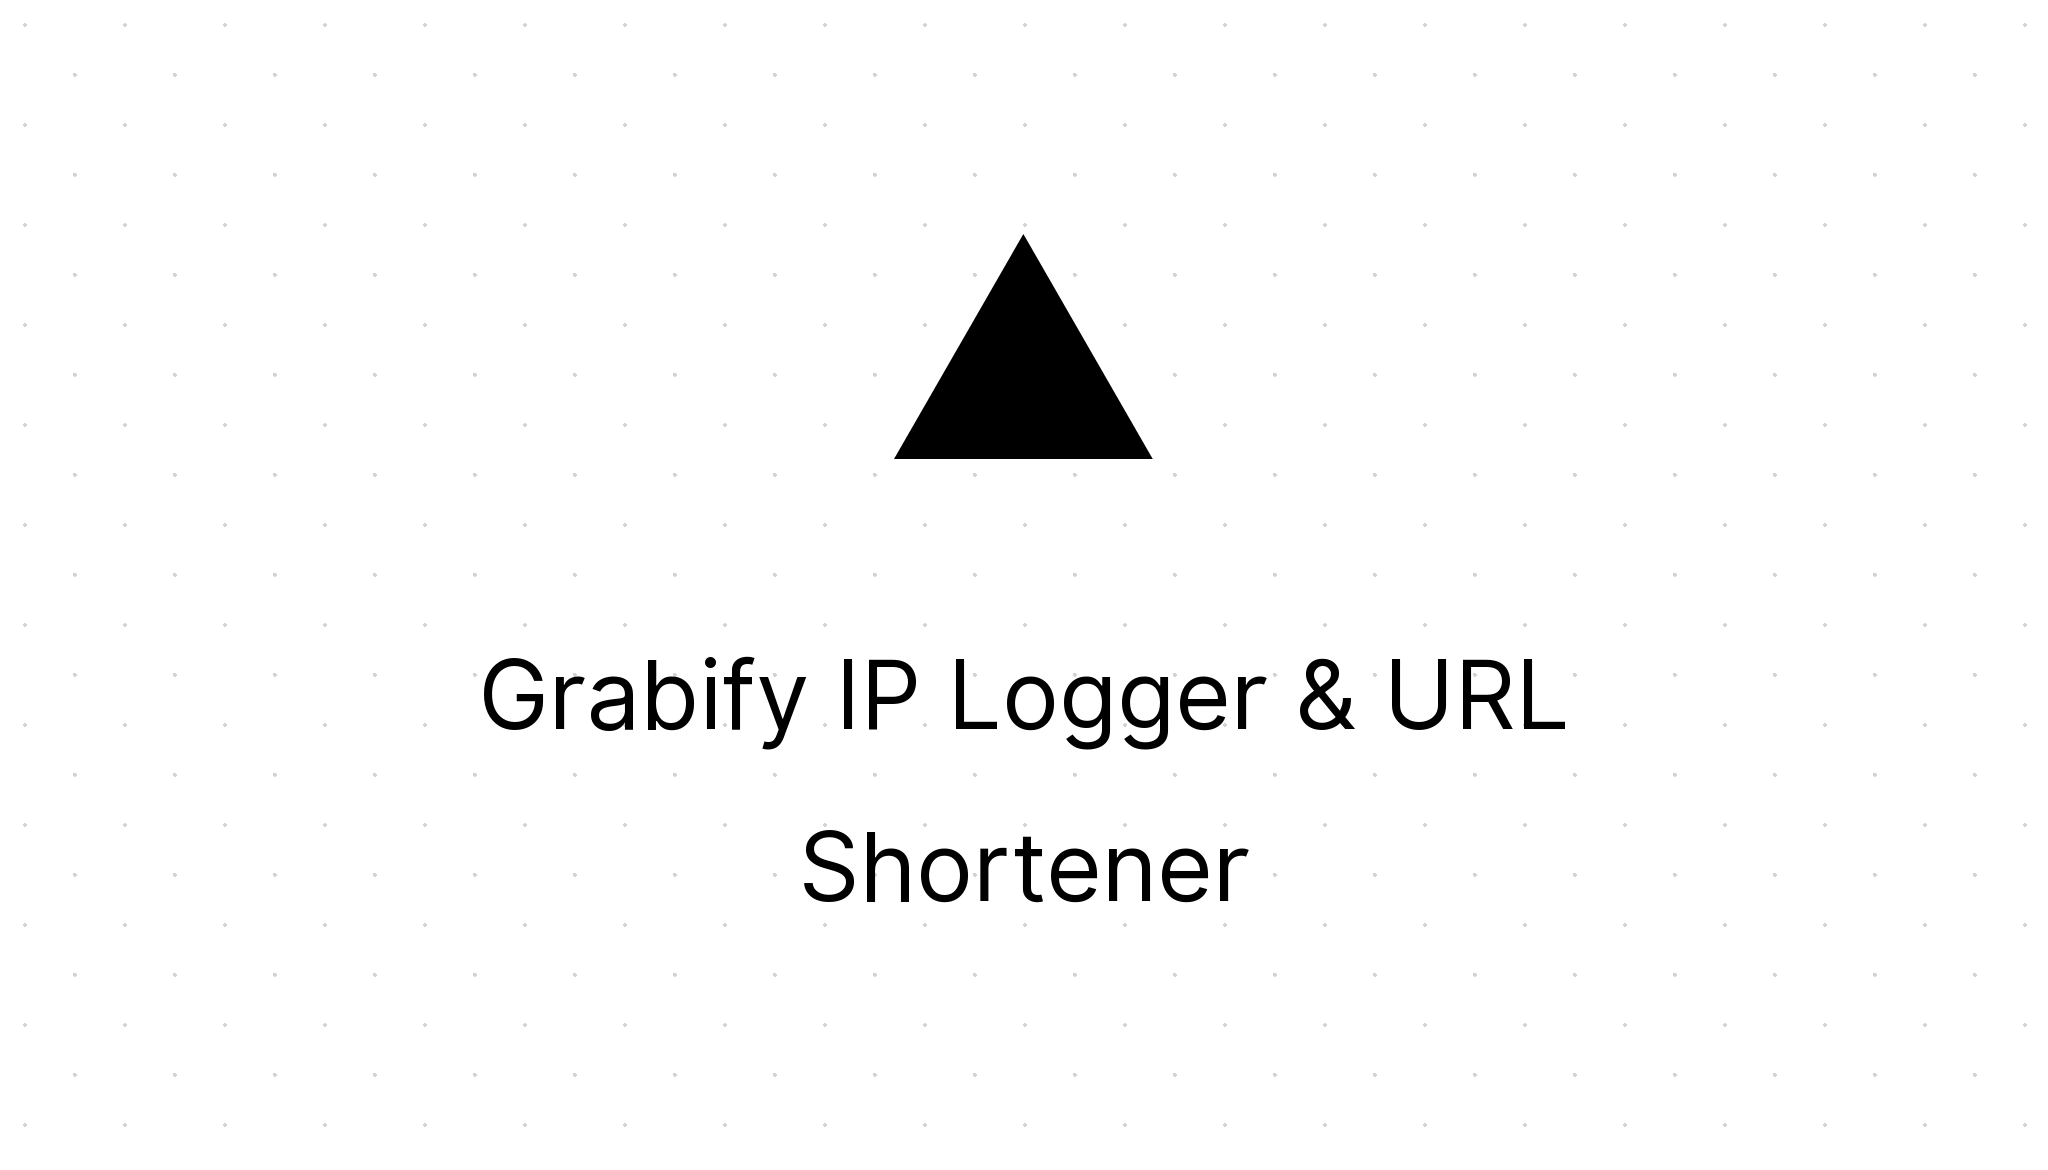 iplogger · GitHub Topics · GitHub